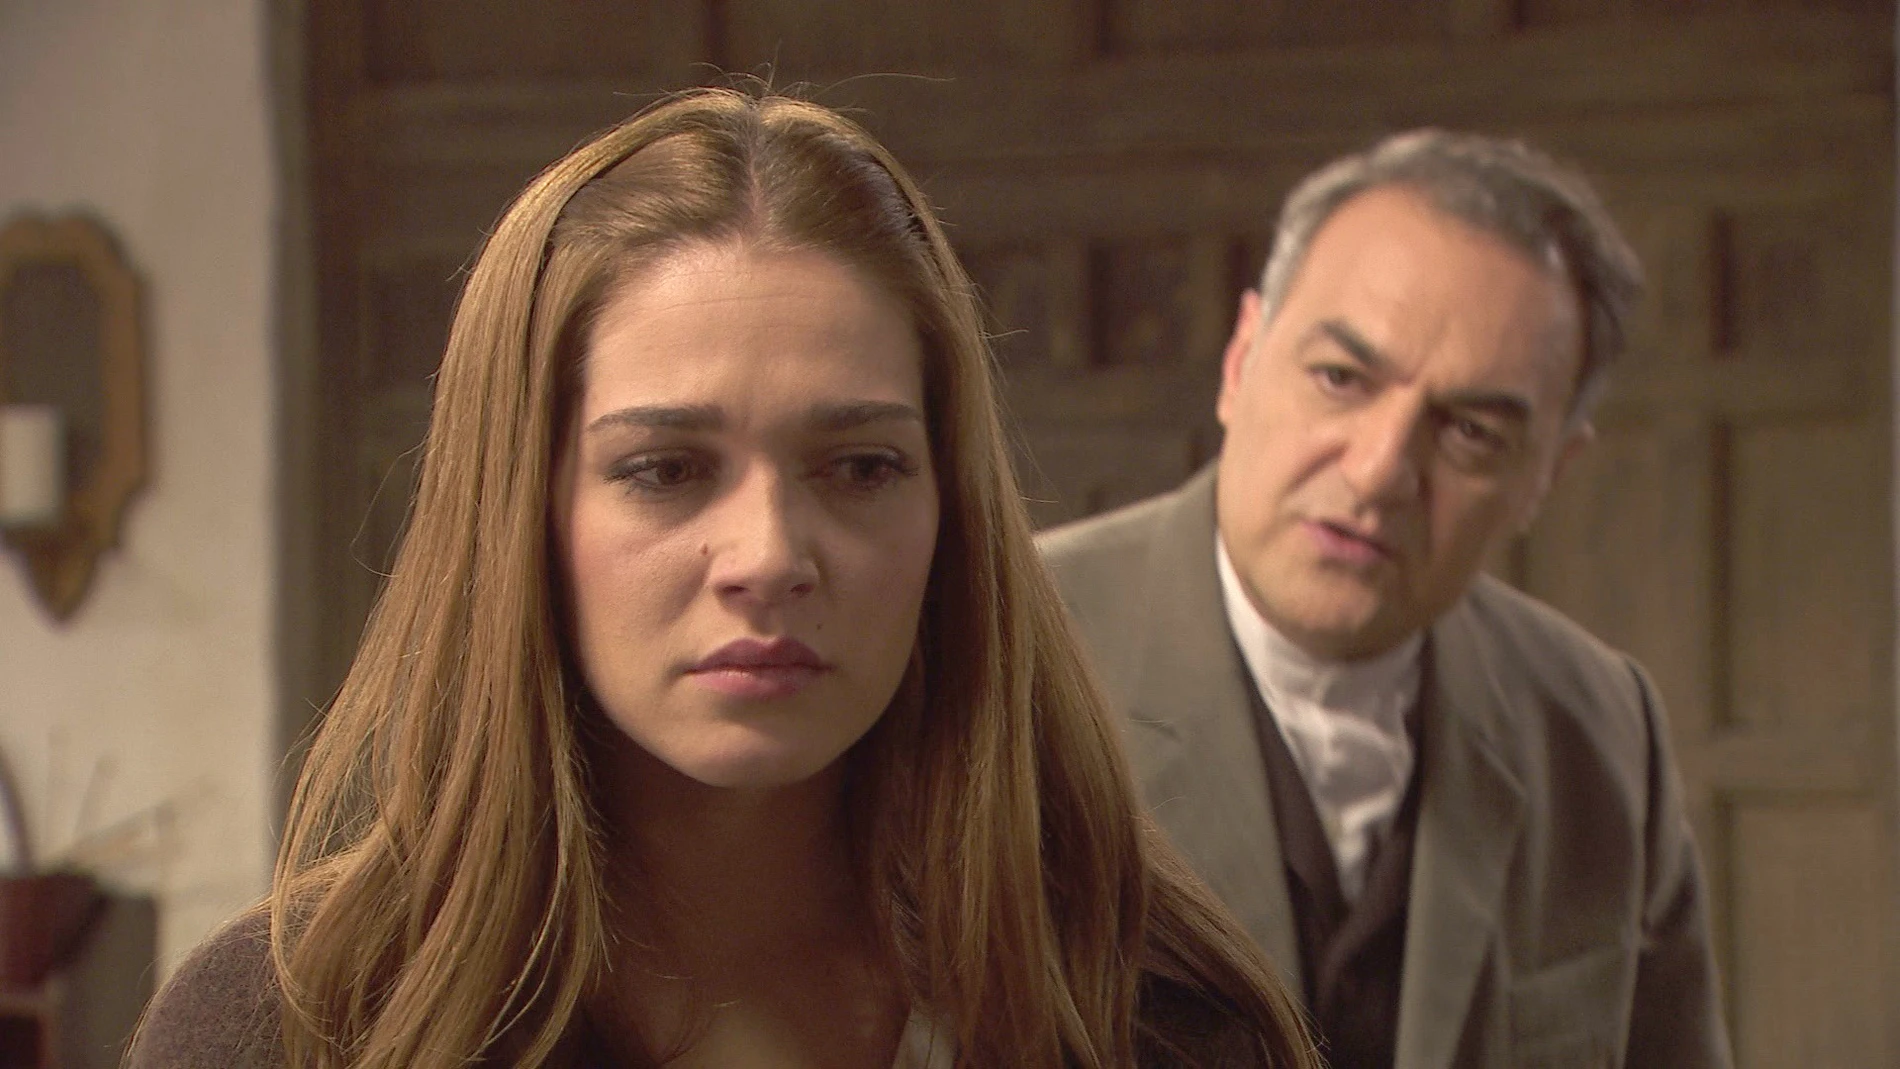 La dura decisión de Julieta que la separa de su padre: "Hasta aquí hemos llegado" 